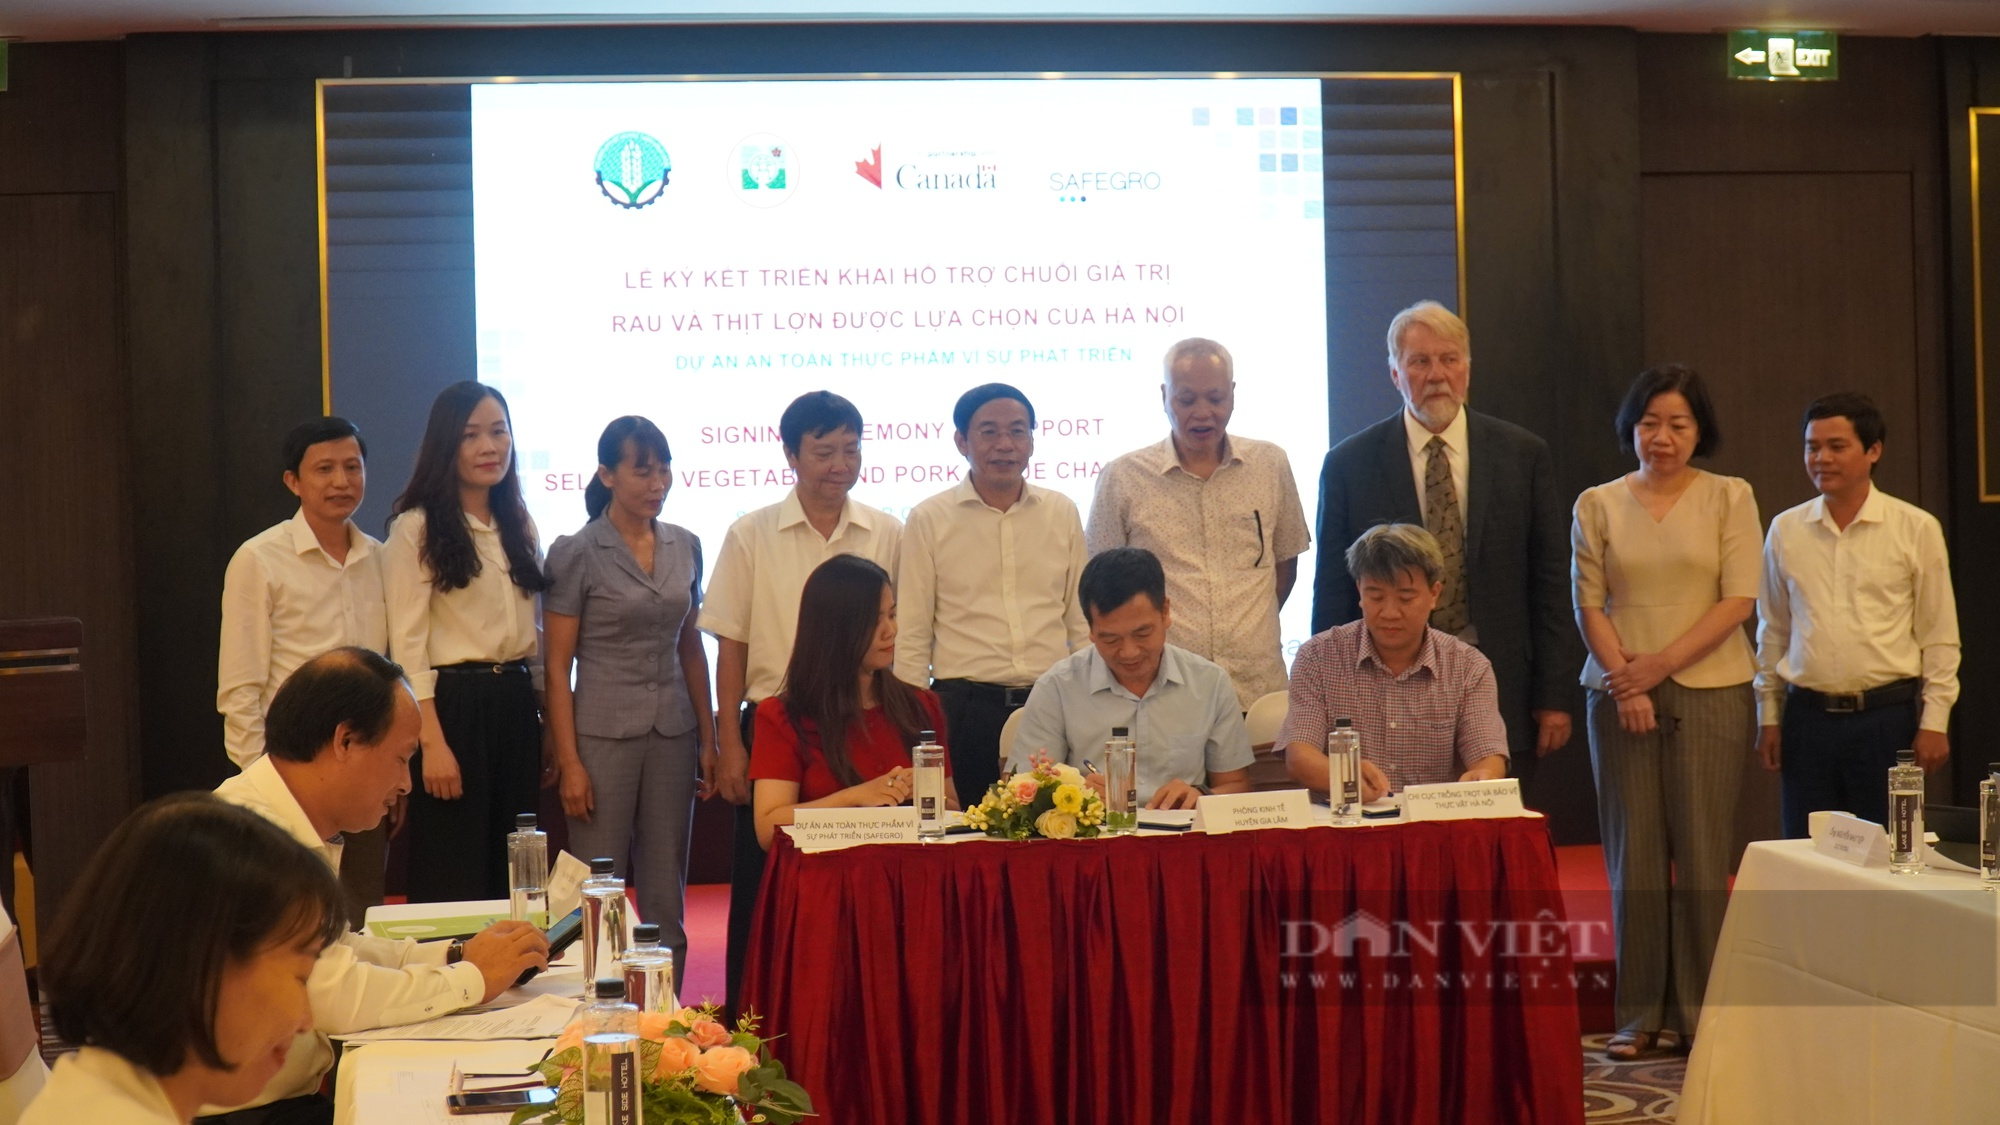 Các tác nhân chuỗi rau, thịt ở Hà Nội ký kết hợp tác về an toàn thực phẩm - Ảnh 1.